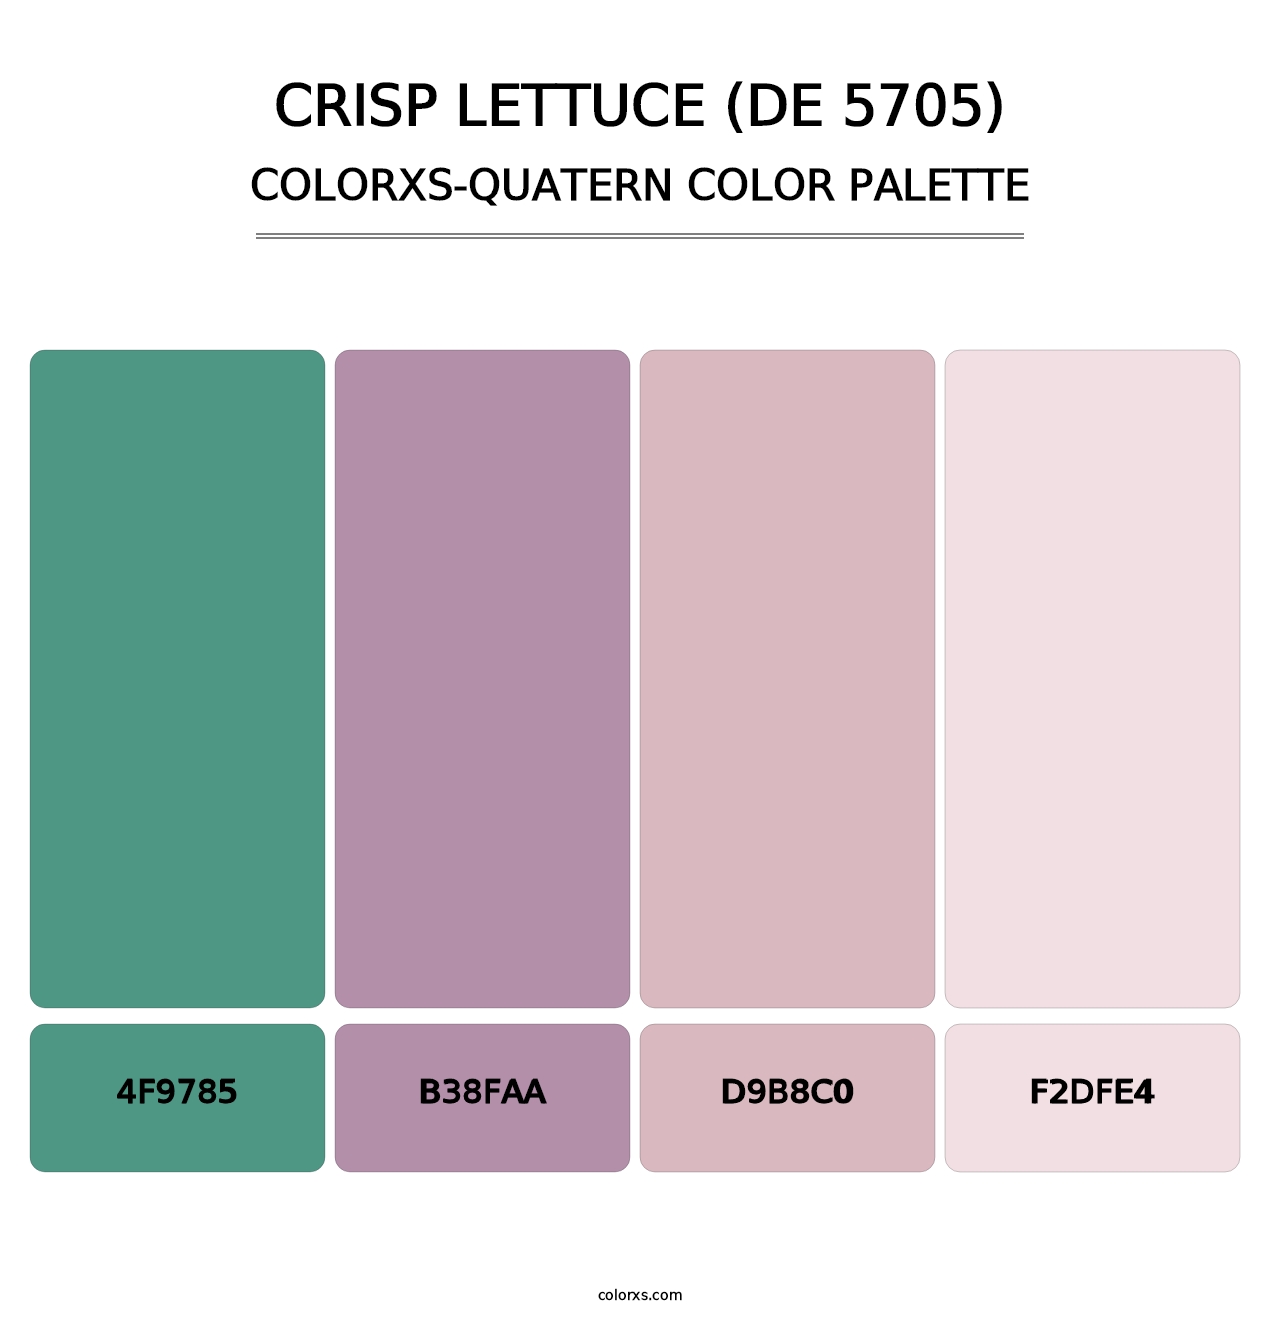 Crisp Lettuce (DE 5705) - Colorxs Quatern Palette